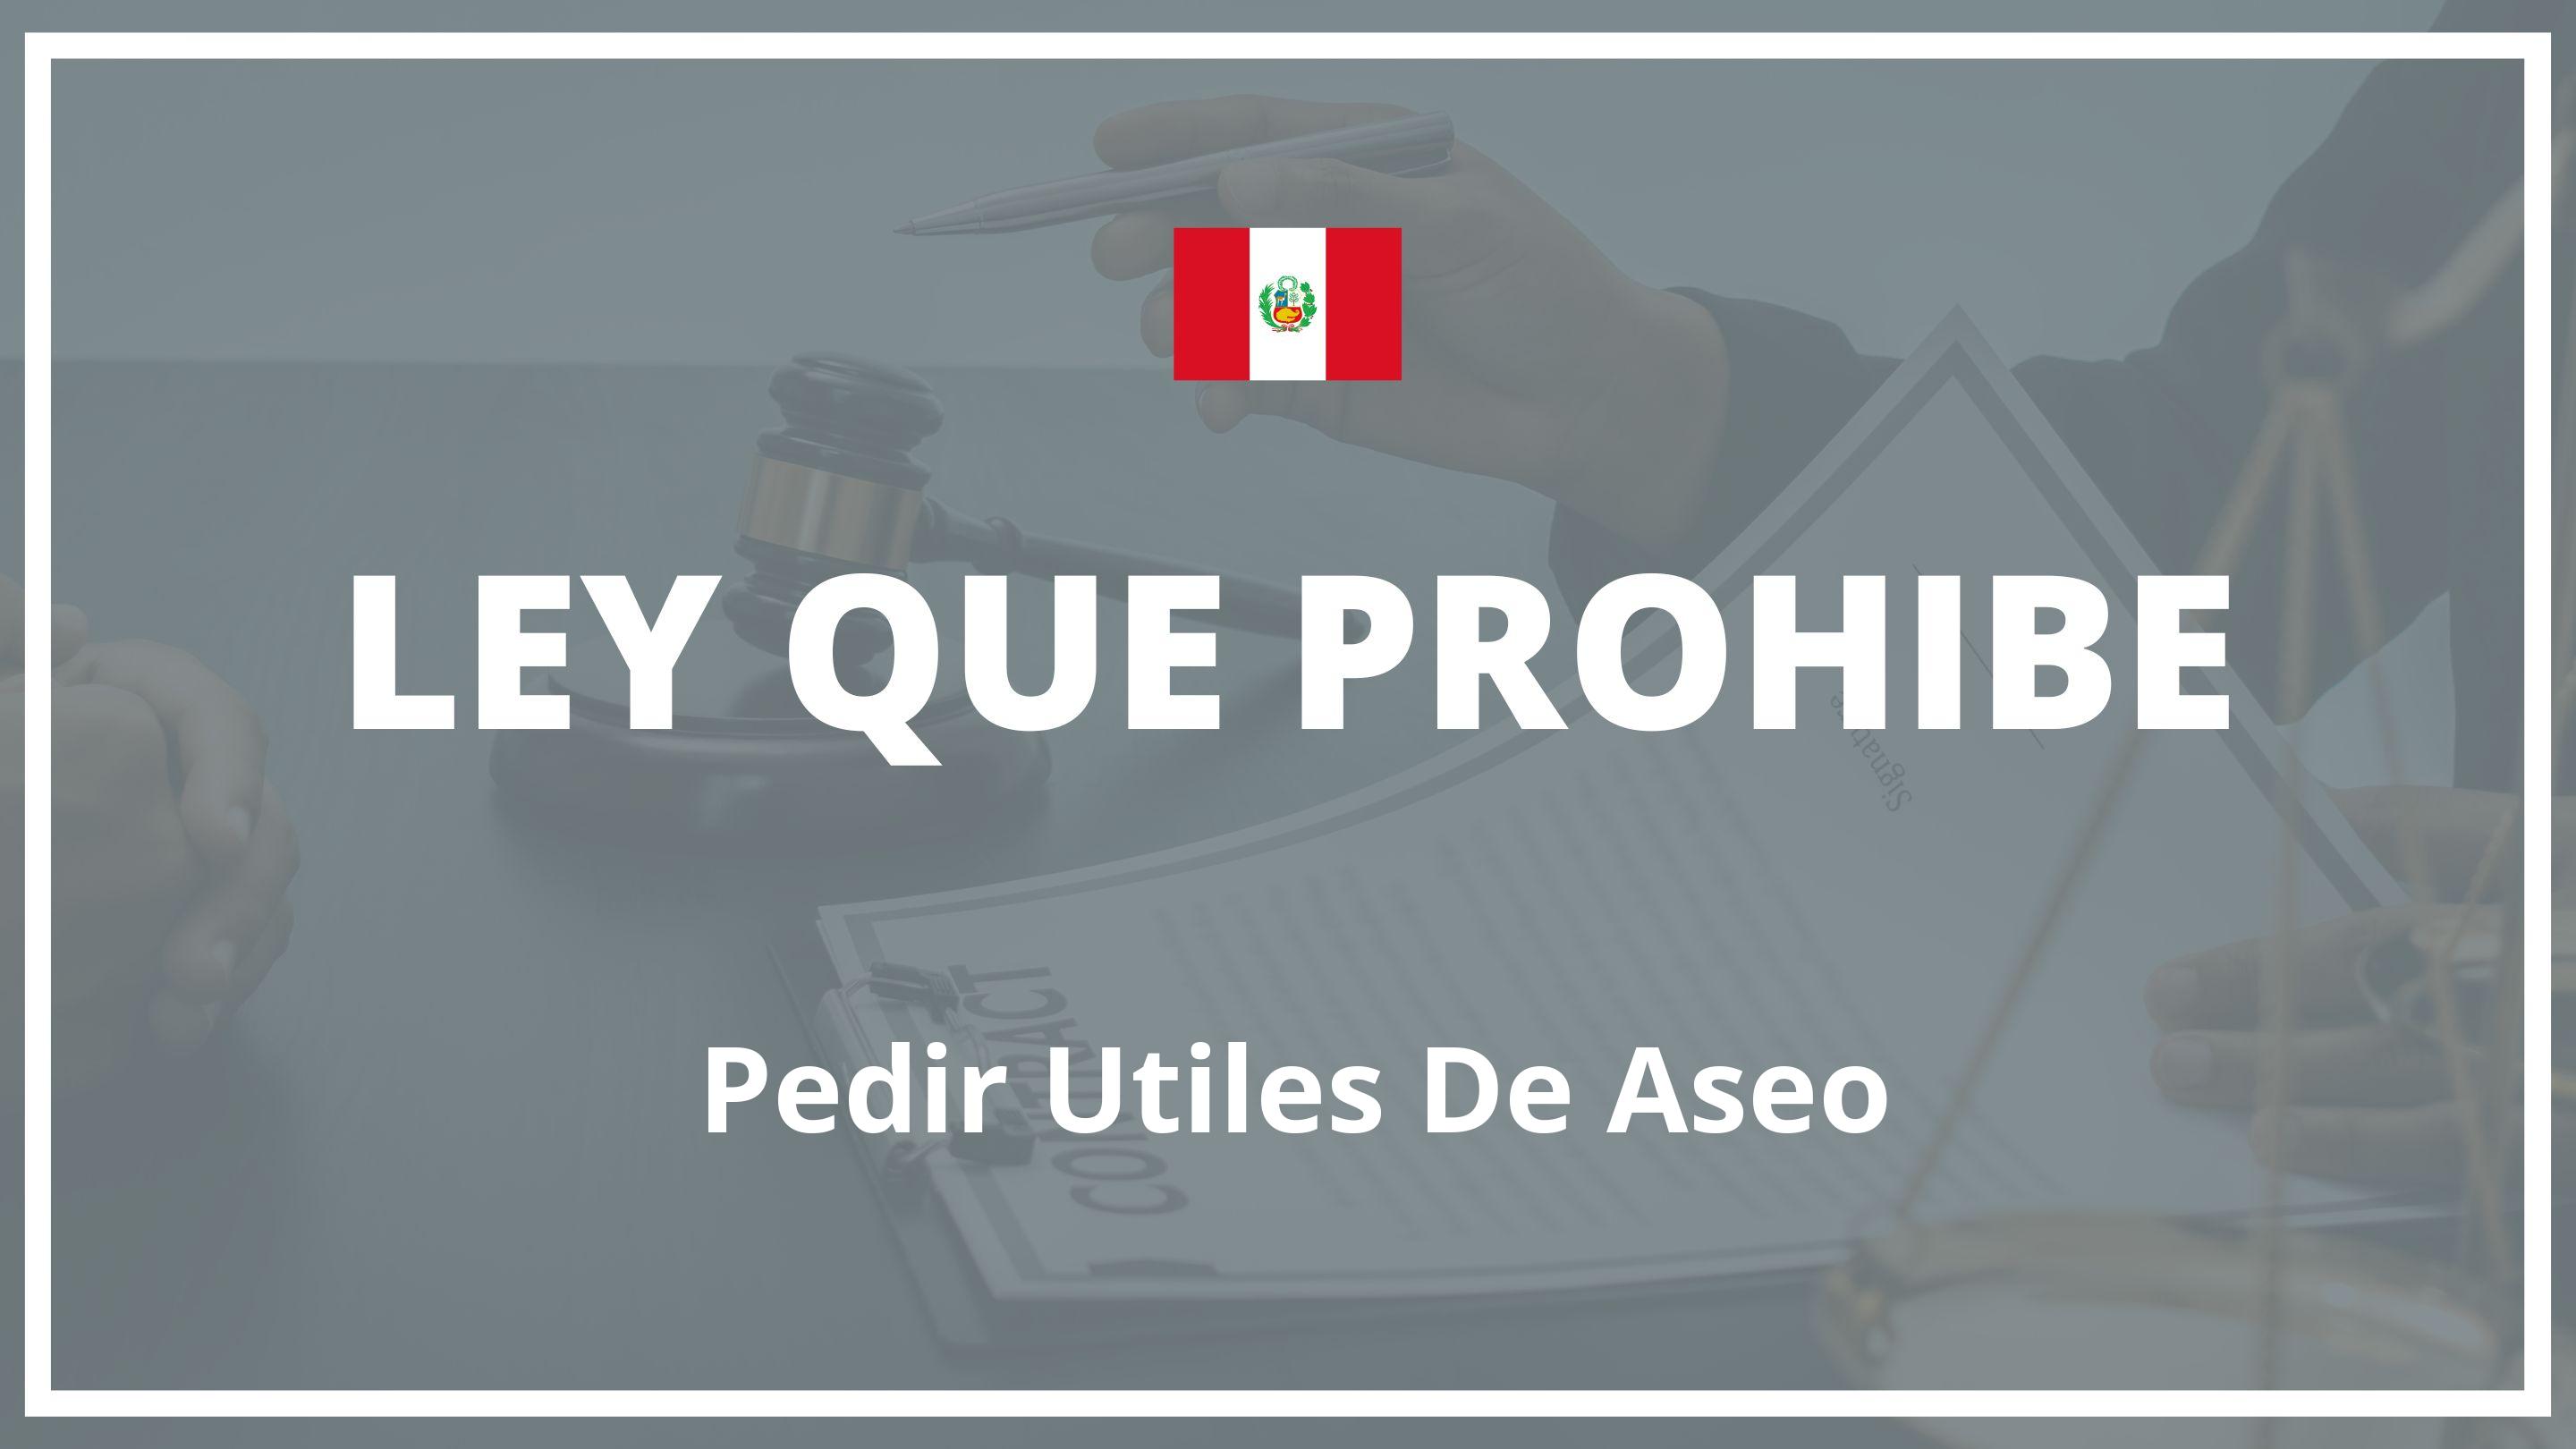 Ley que prohibe pedir utiles de aseo Peru